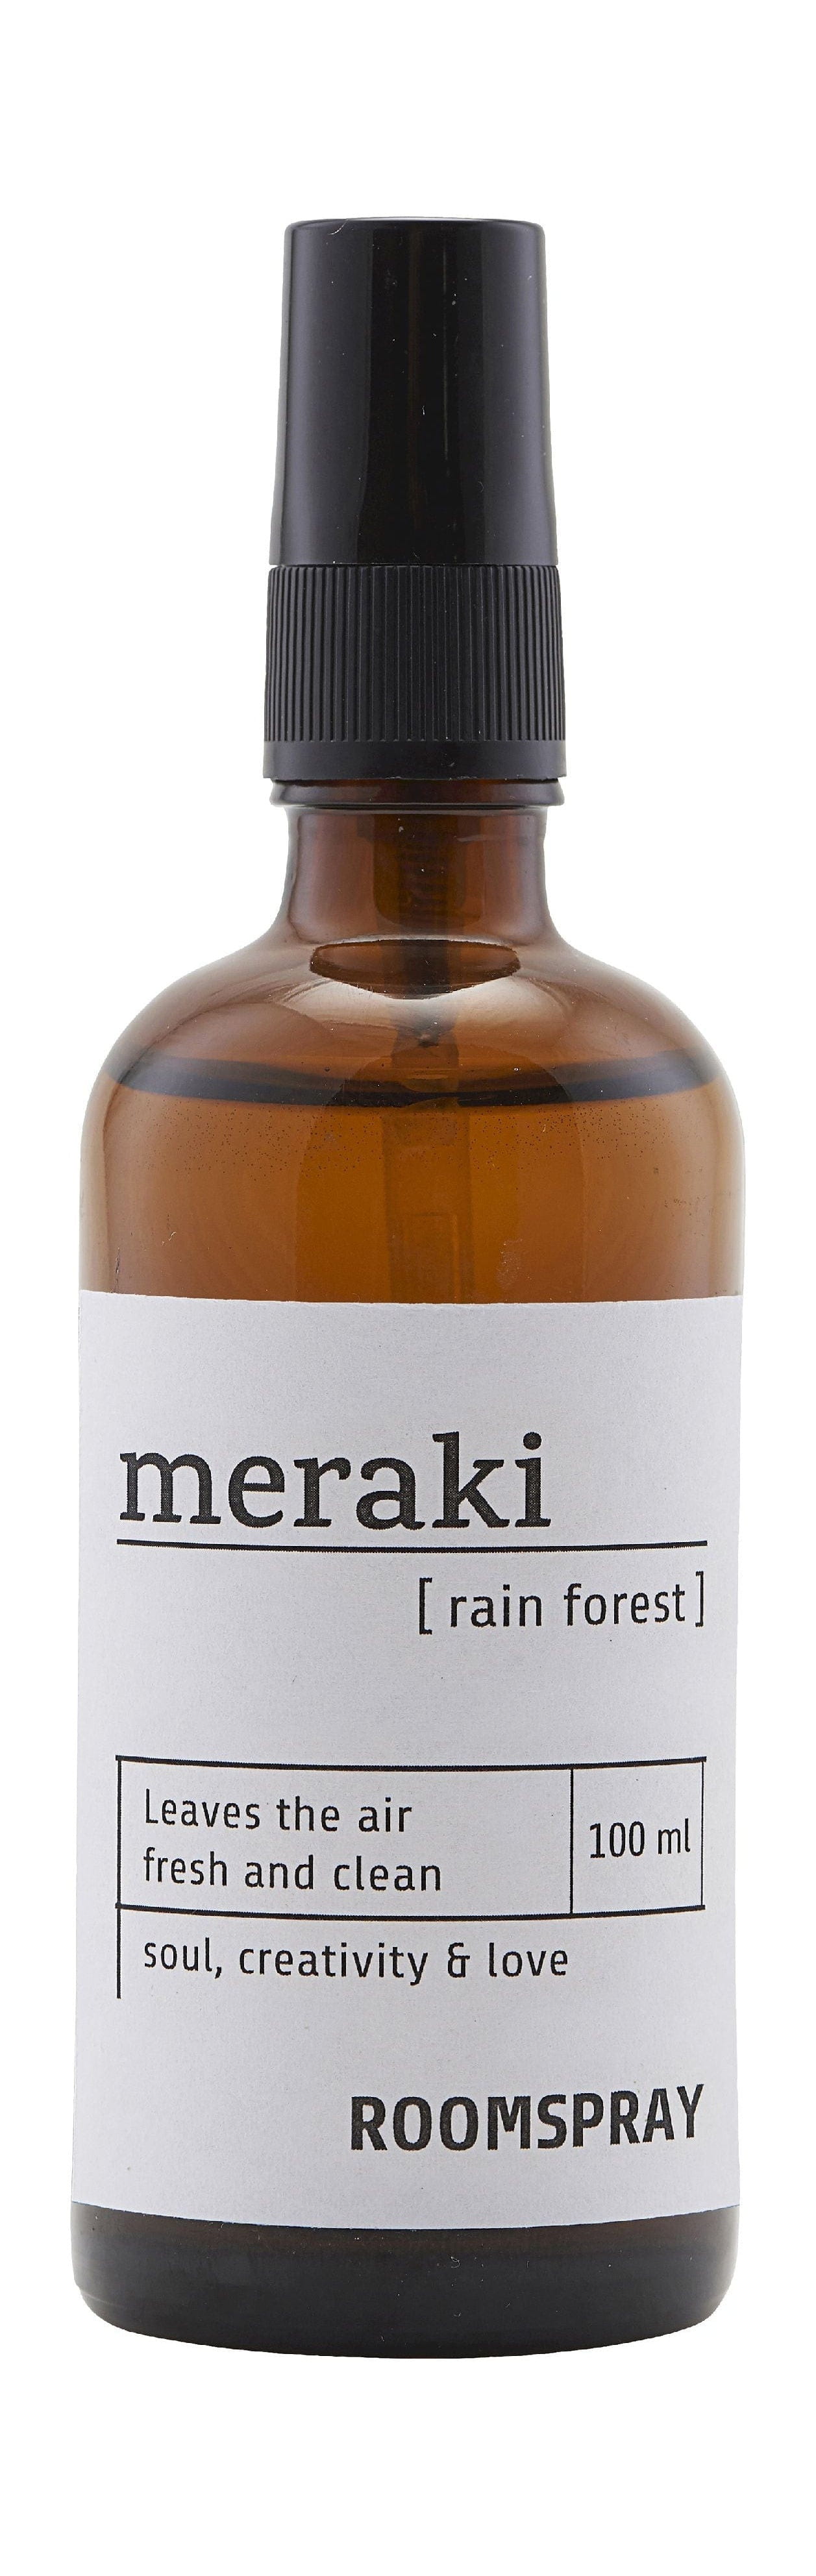 Spray de la habitación Meraki 100 ml, selva tropical